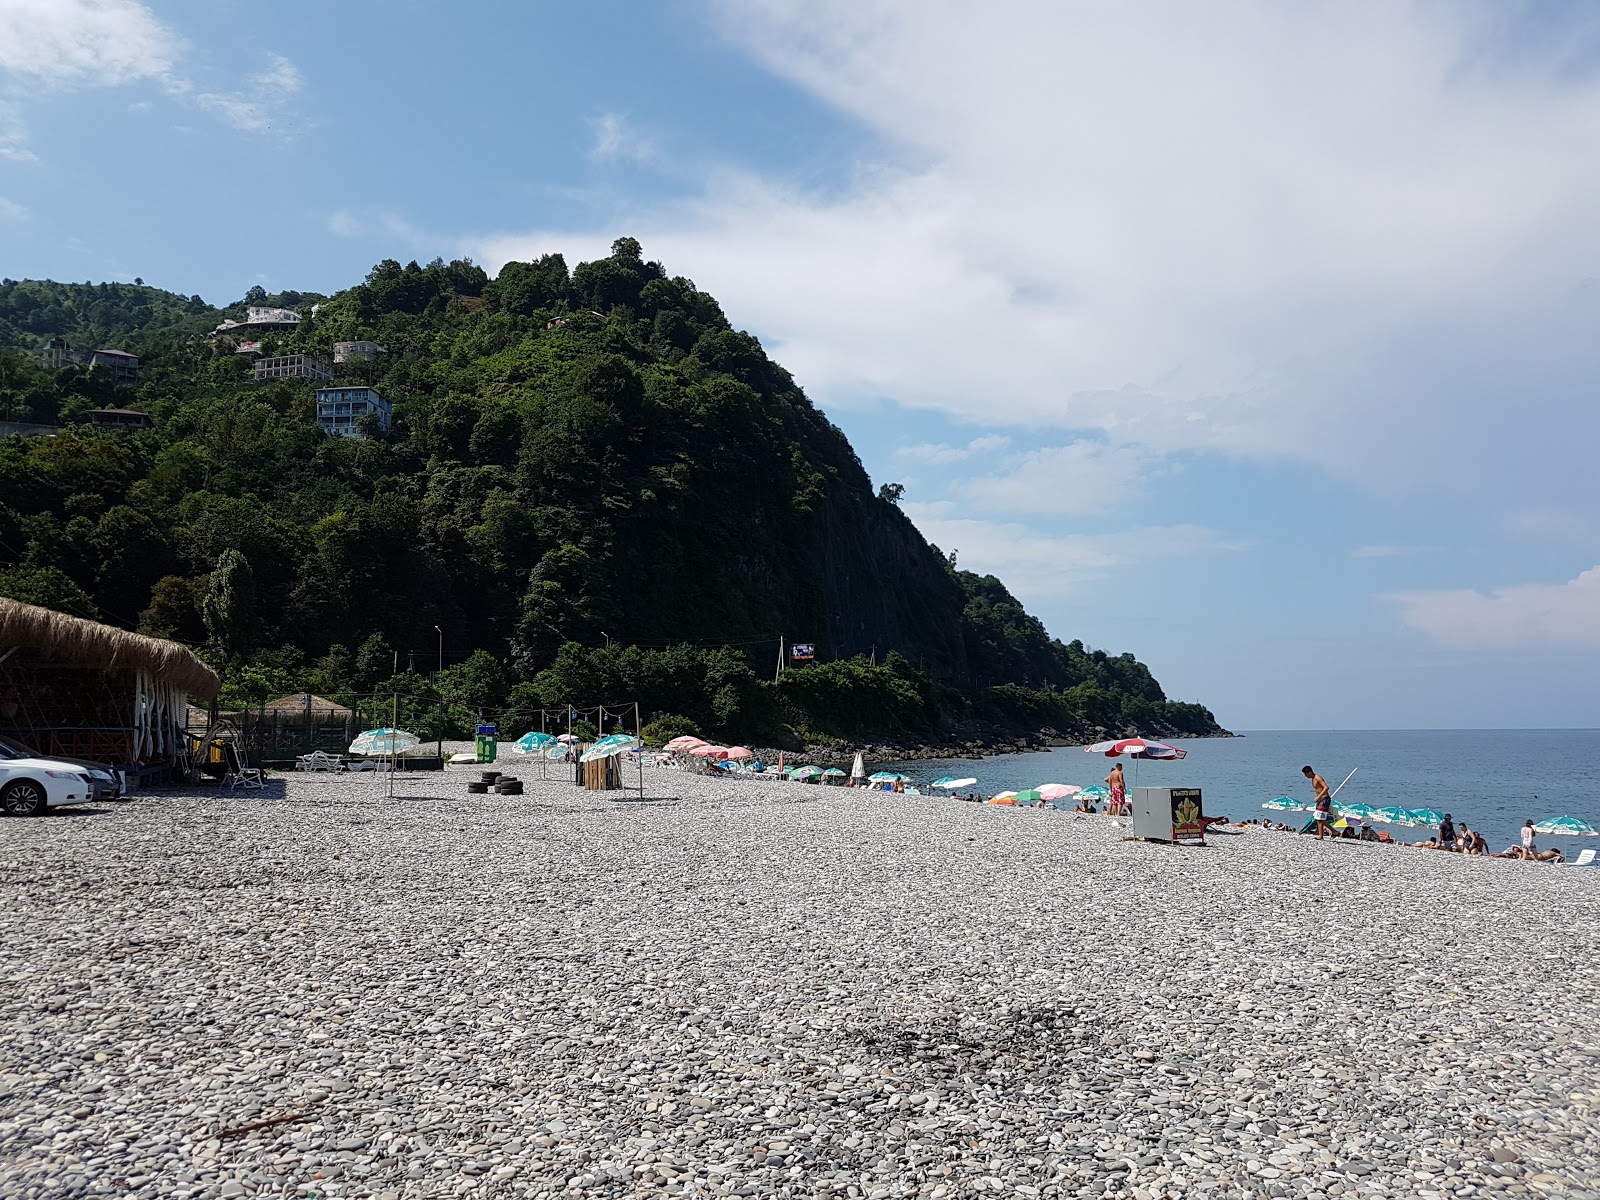 Zdjęcie Kvariati beach - popularne miejsce wśród znawców relaksu